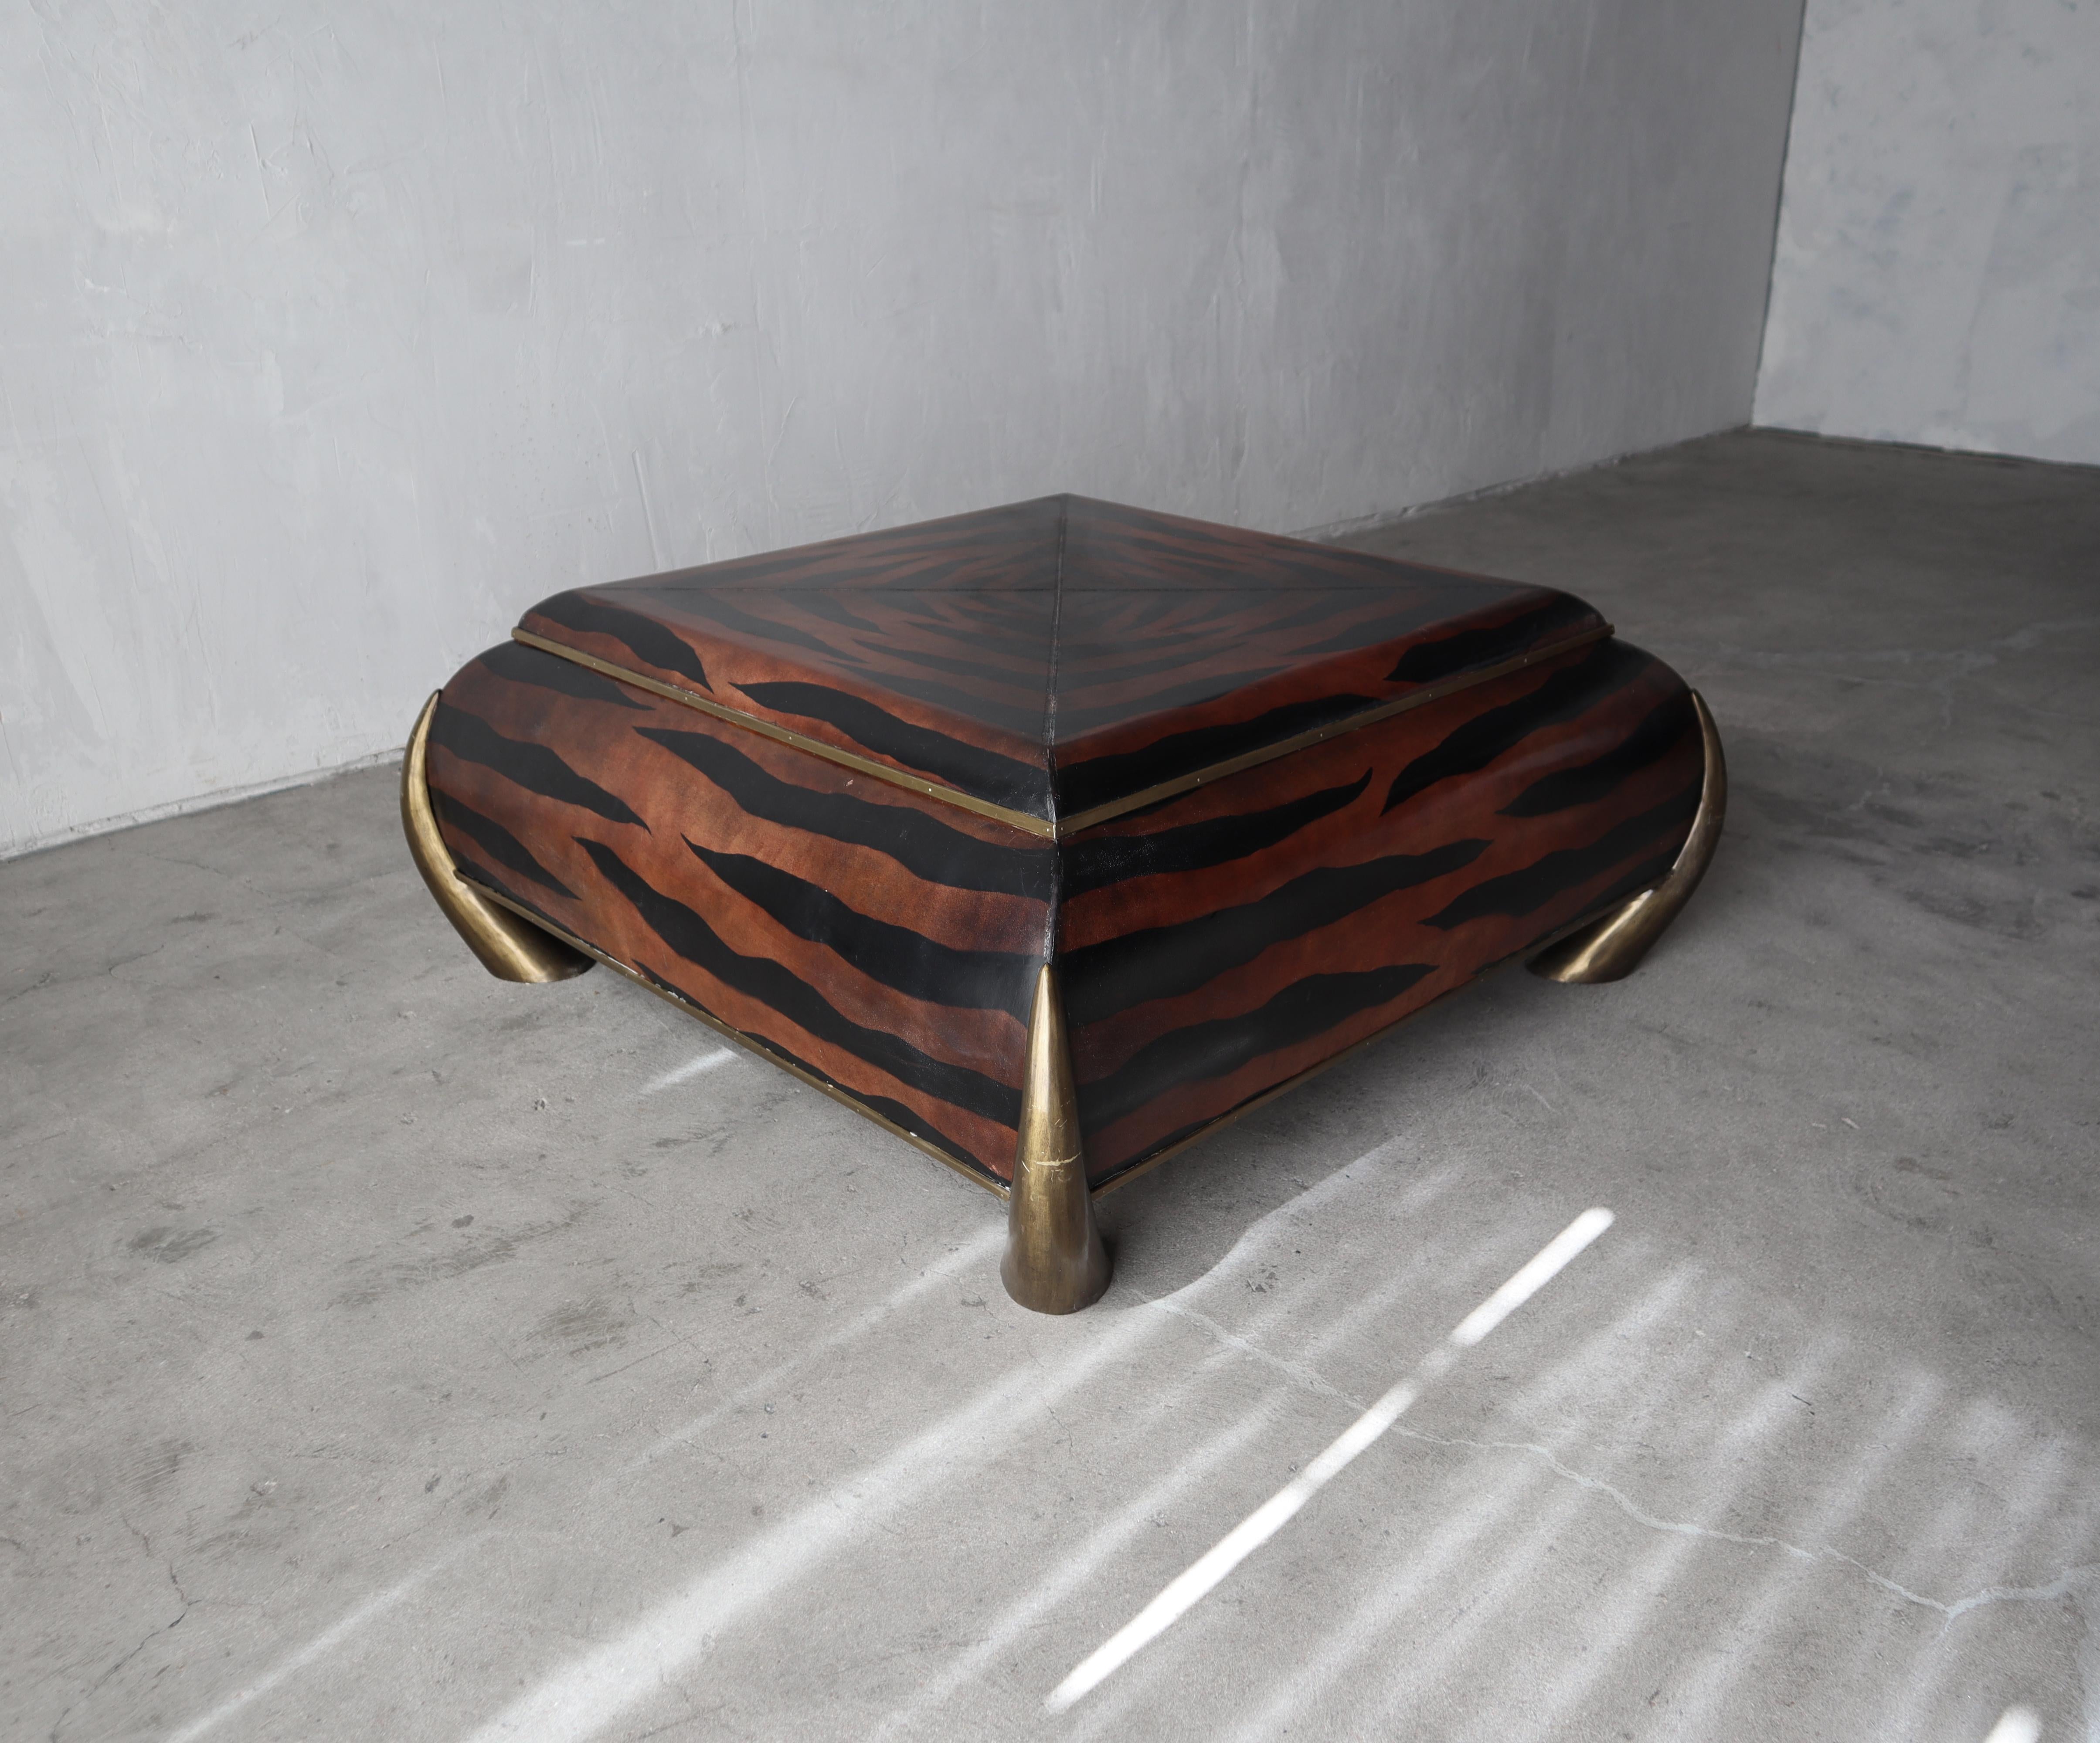 Cette magnifique table basse recouverte de cuir est un exemple exemplaire de l'artisanat classique de Maitland-Smith.

La table basse est recouverte de cuir avec des rayures de tigre peintes à la main, des détails estampés à la main et des pieds